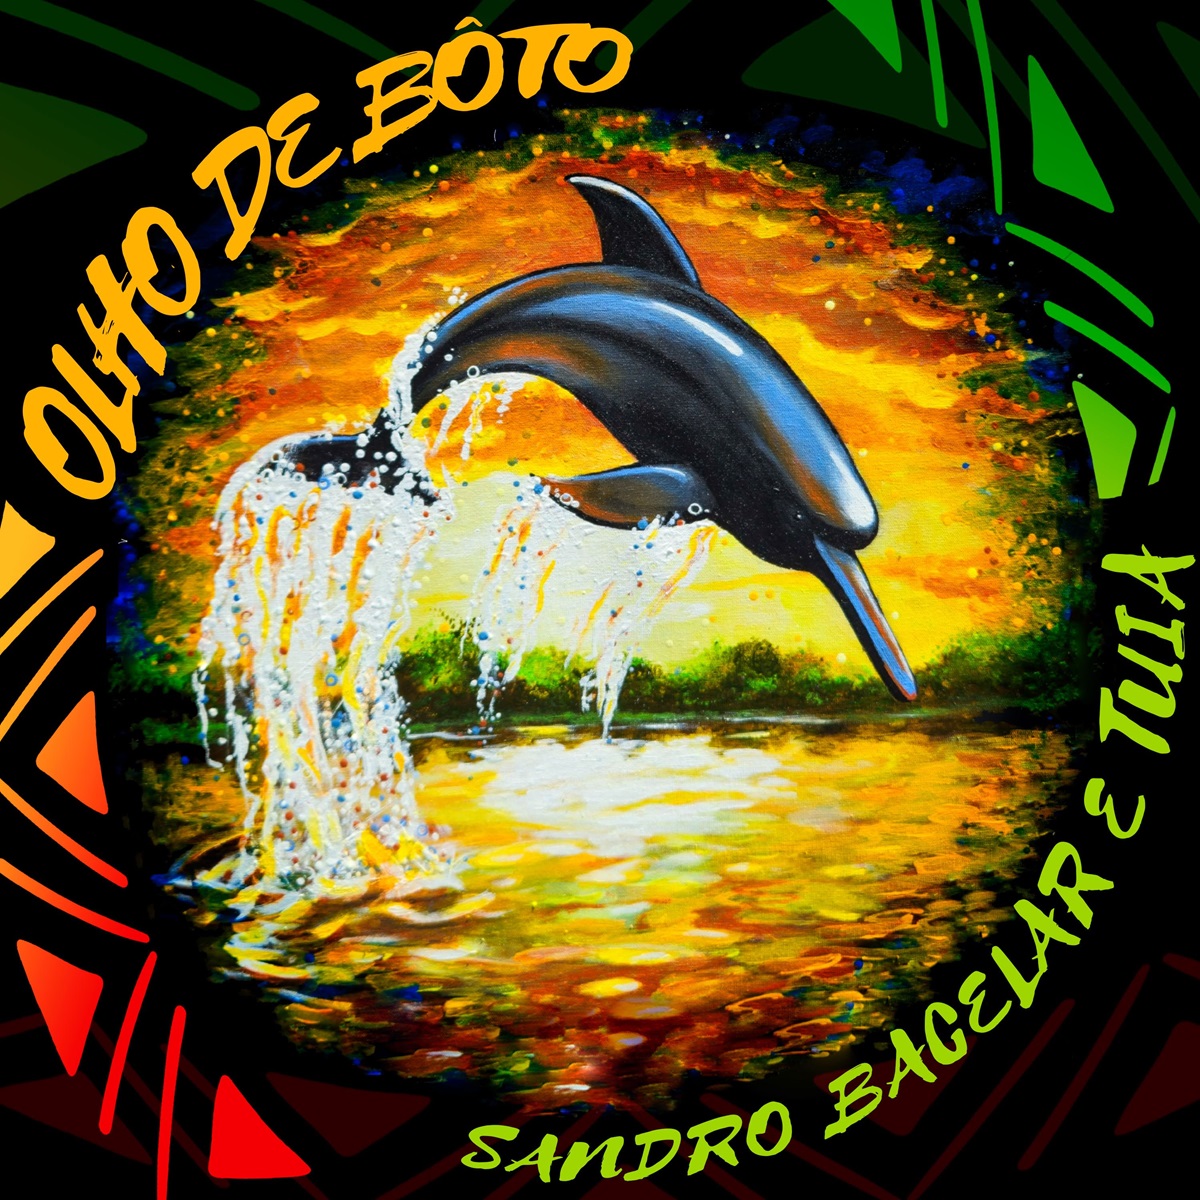 LANÇAMENTO: Do novo álbum 'Amazônia em Nós' sai o primeiro single ‘Olho de Bôto’, gravado por Sandro Bacelar e Tuia